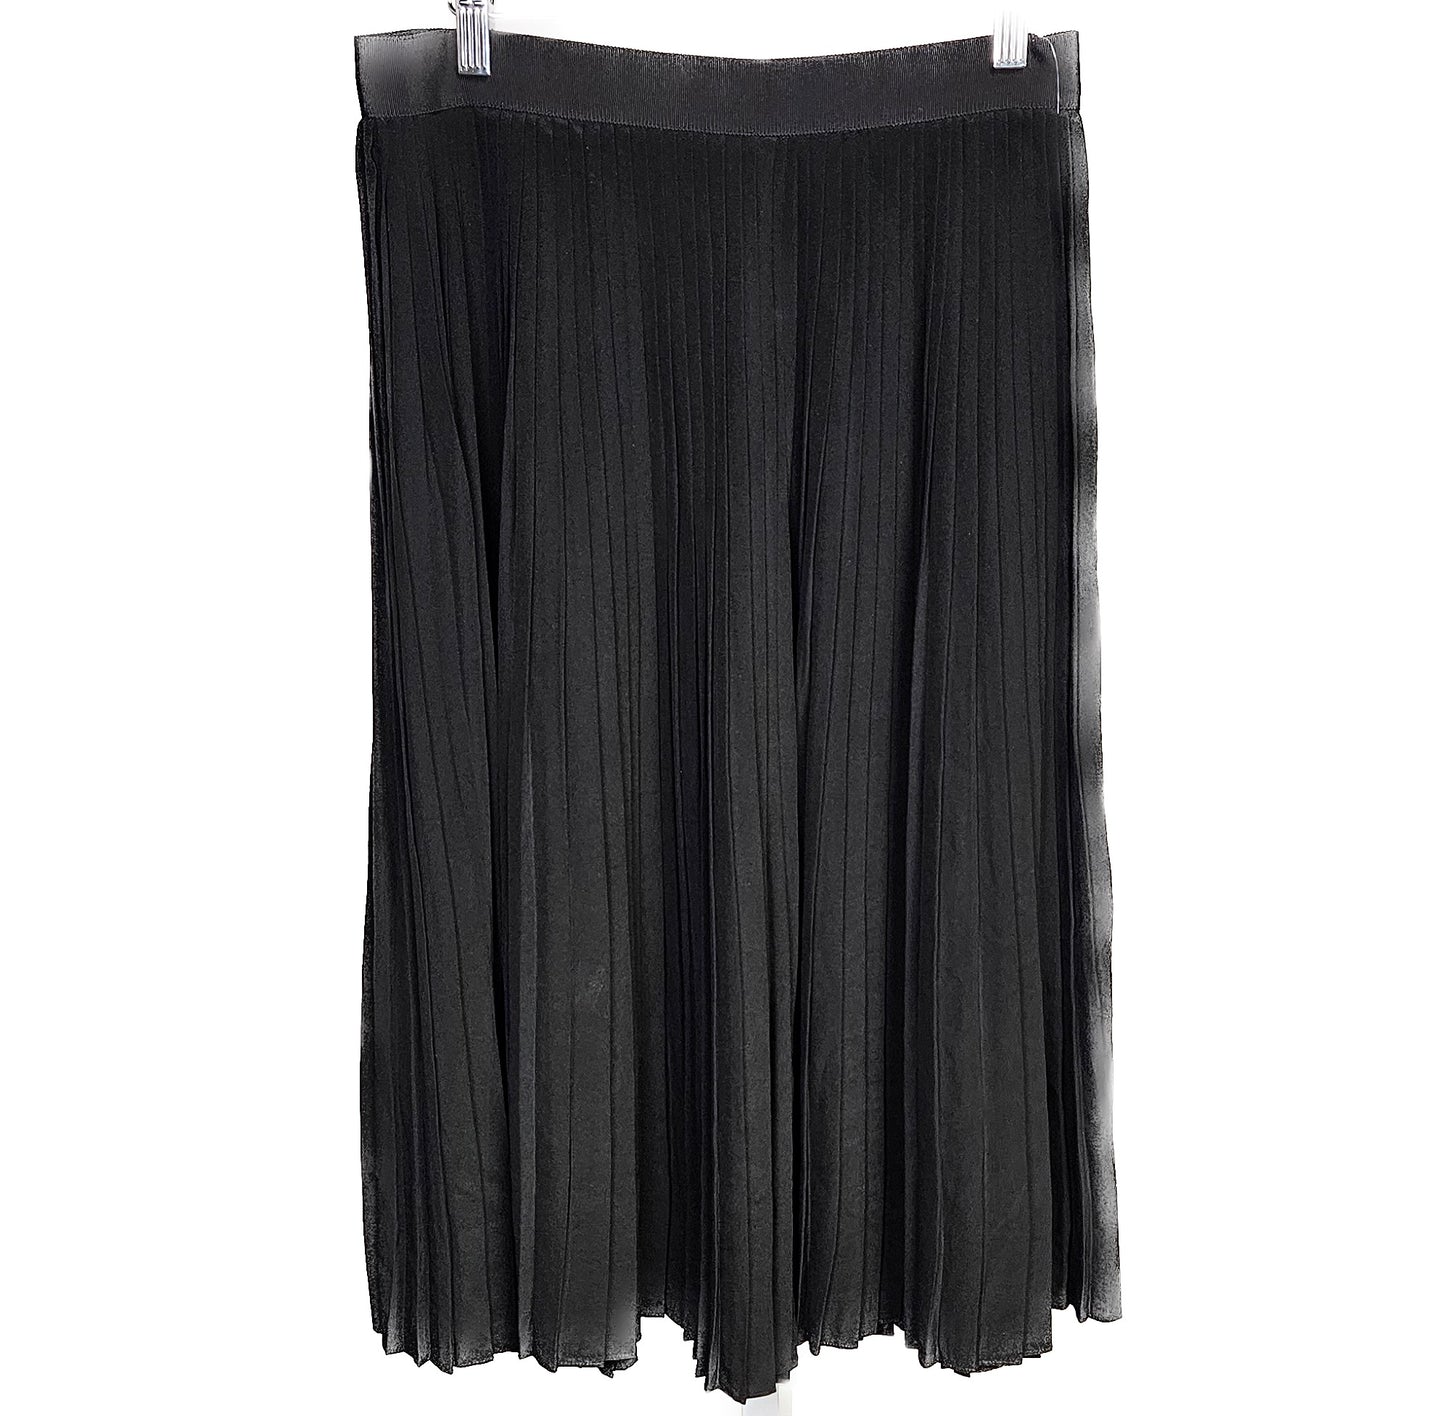 Mayla Silk Skirt